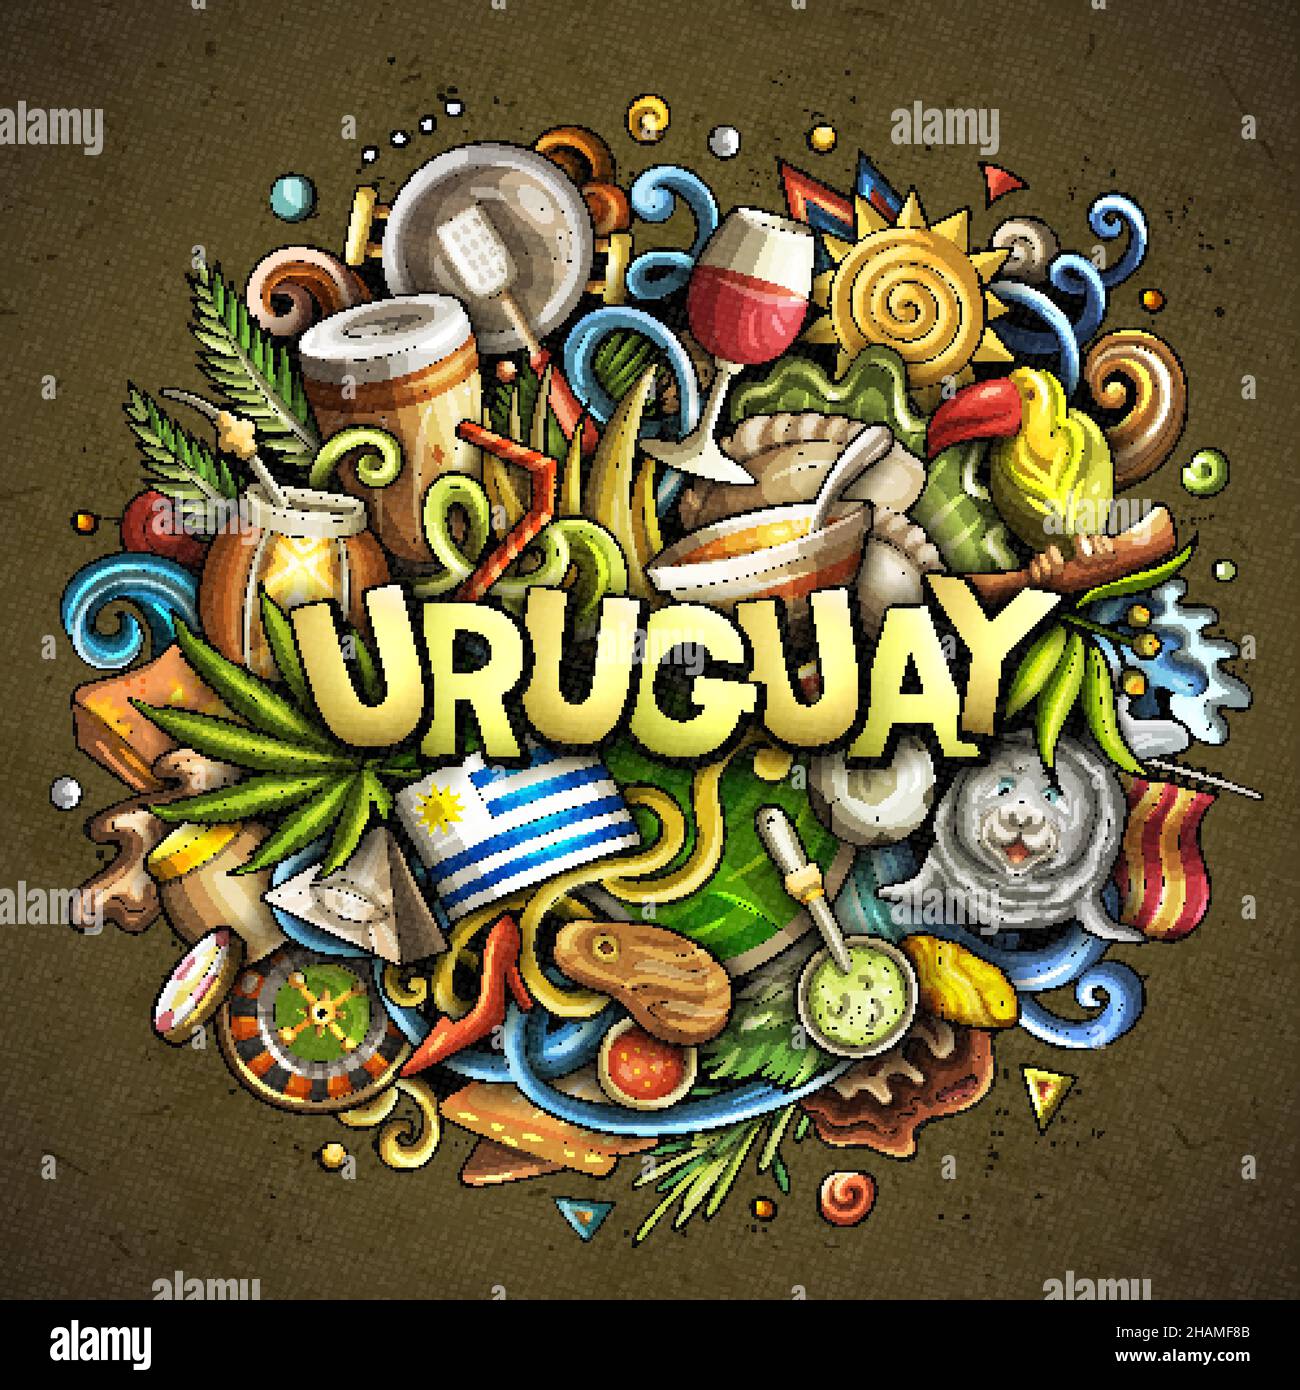 Los 10 juegos de doodles de Google más populares - EL PAÍS Uruguay